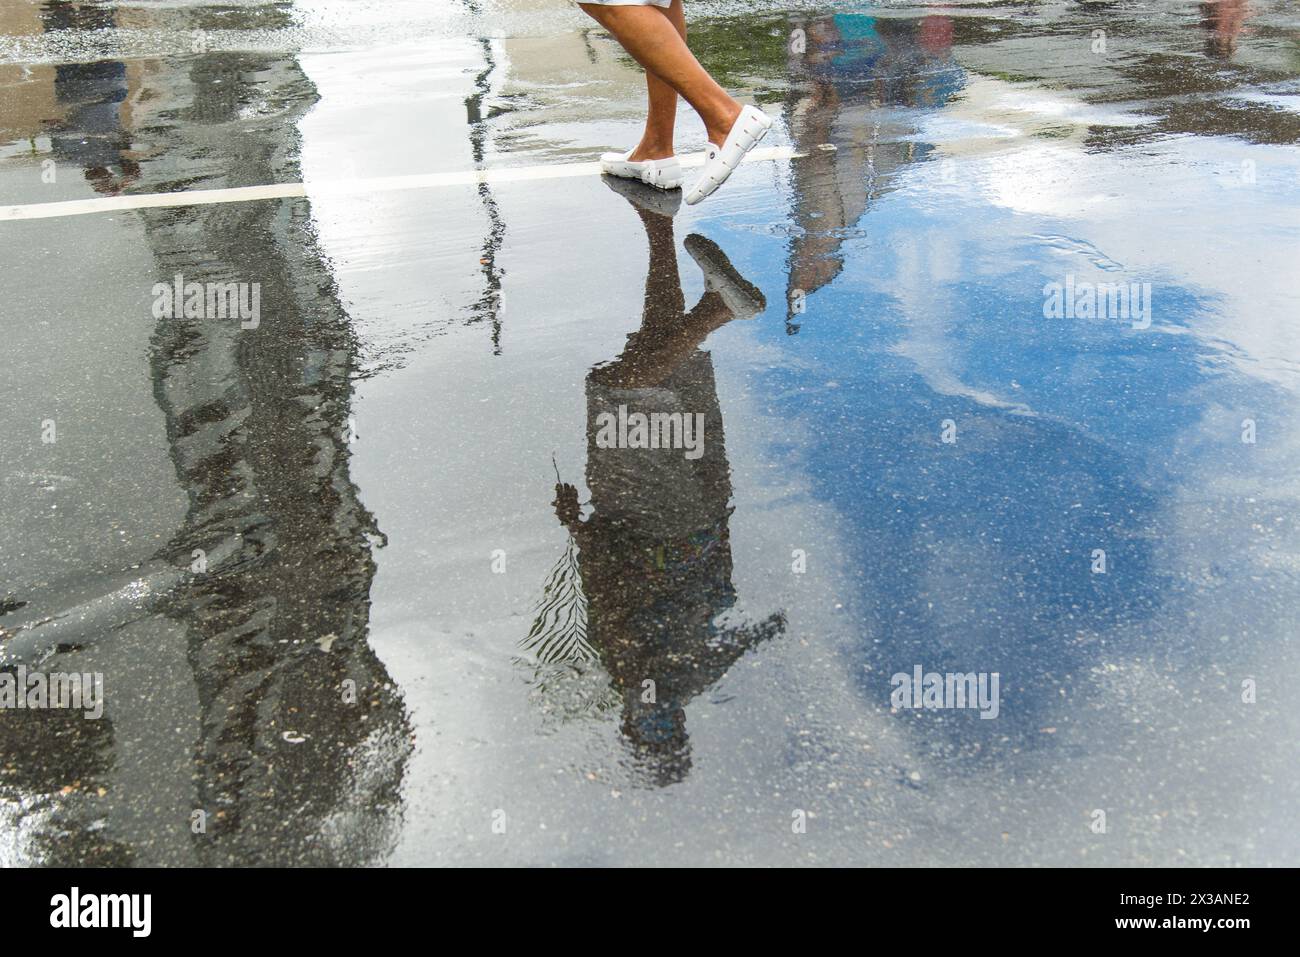 Salvador, Bahia, Brésil - 14 avril 2019 : le reflet du peuple catholique est vu sur le sol humide pendant la célébration du dimanche des Rameaux dans la ville de Salvad Banque D'Images